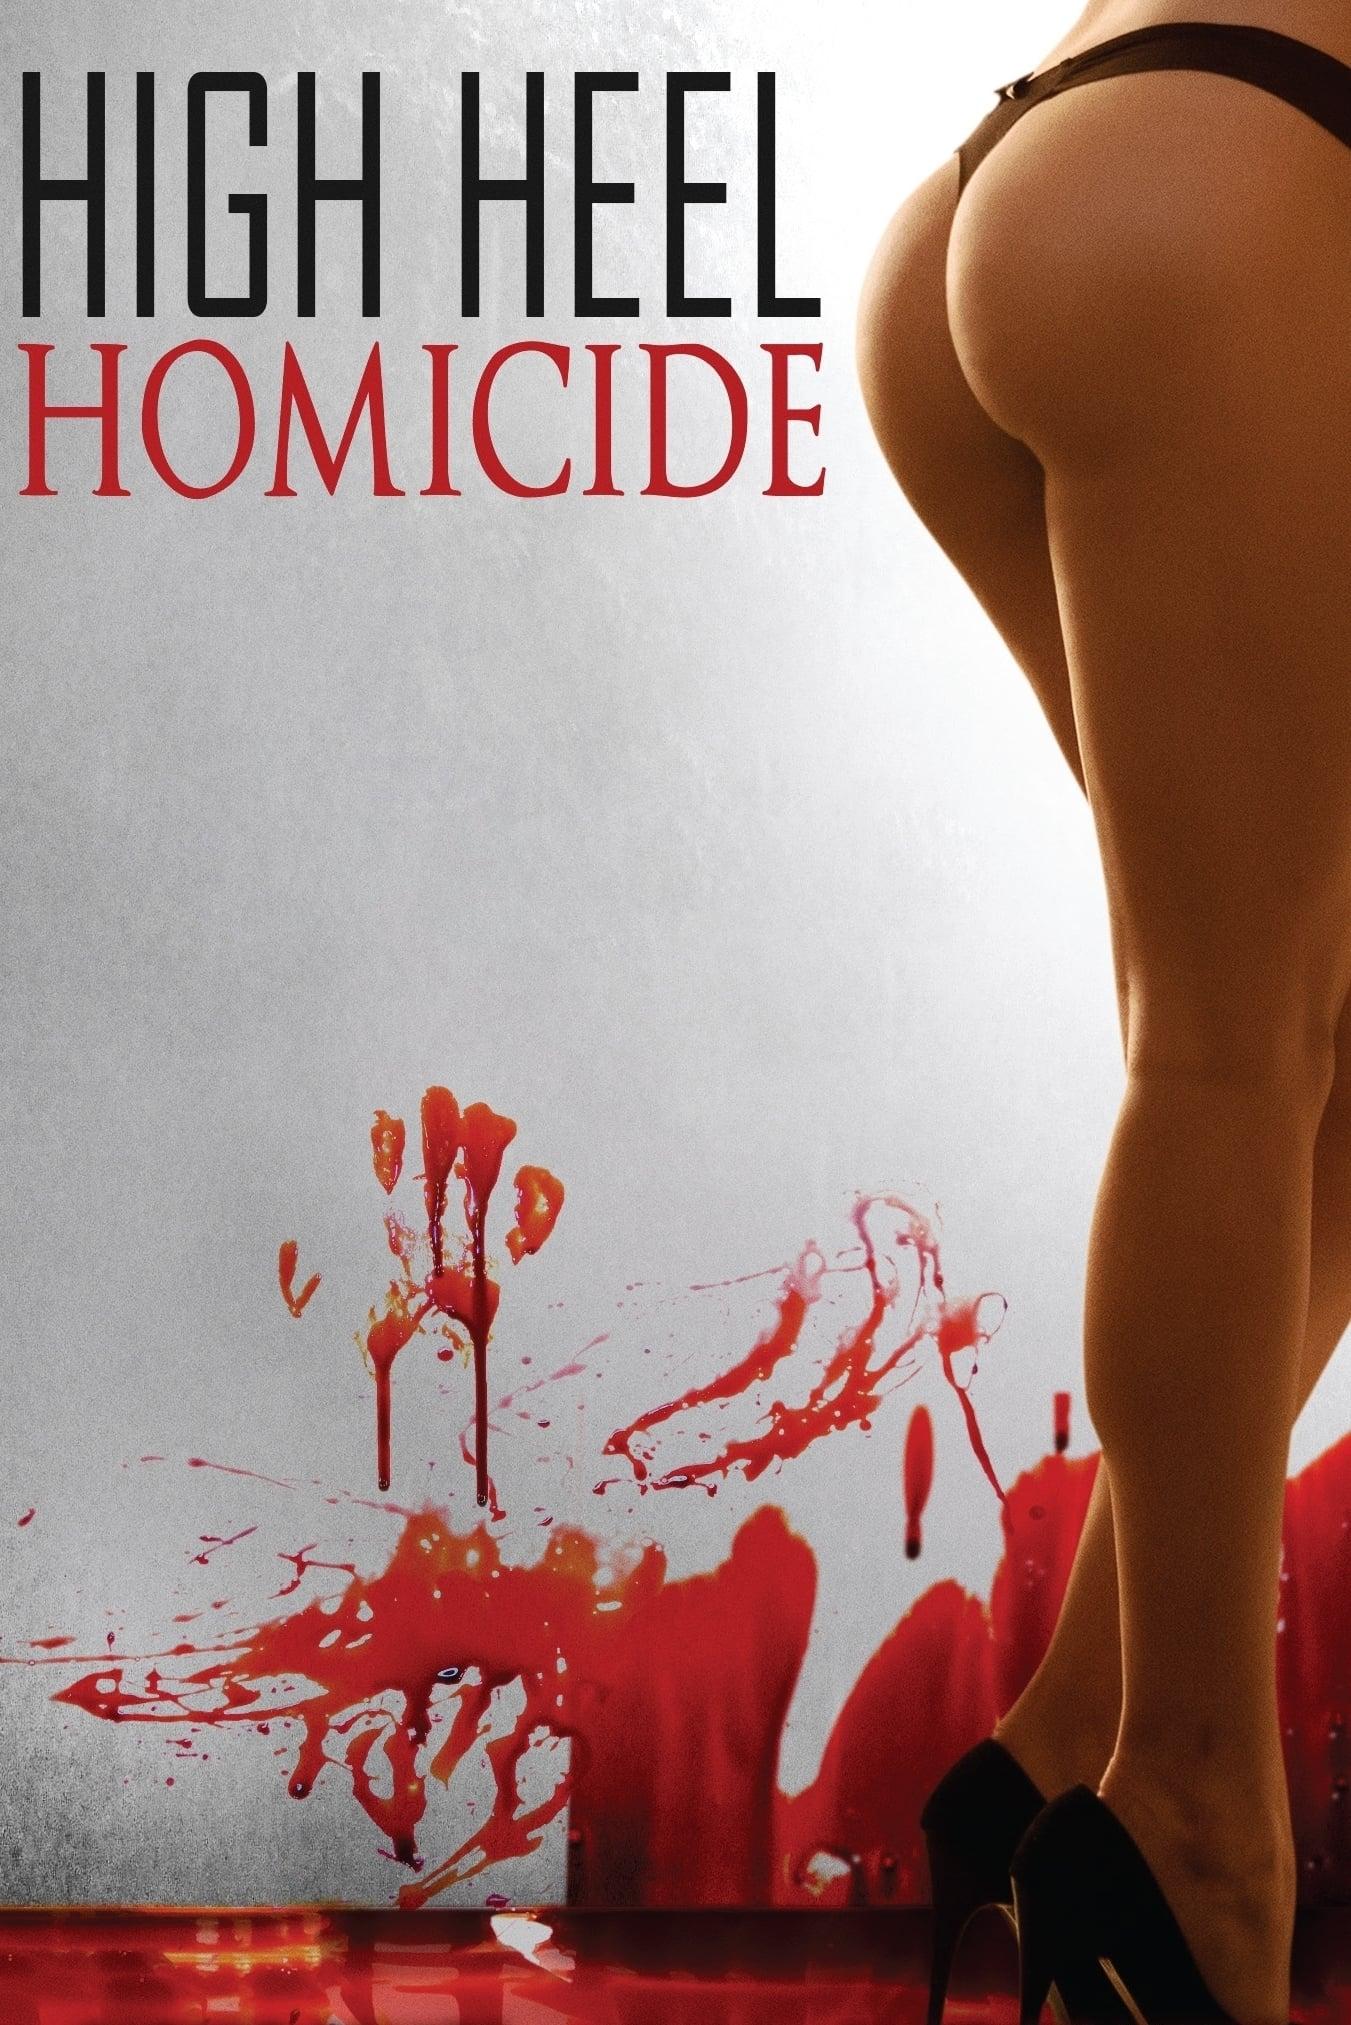 High Heel Homicide poster